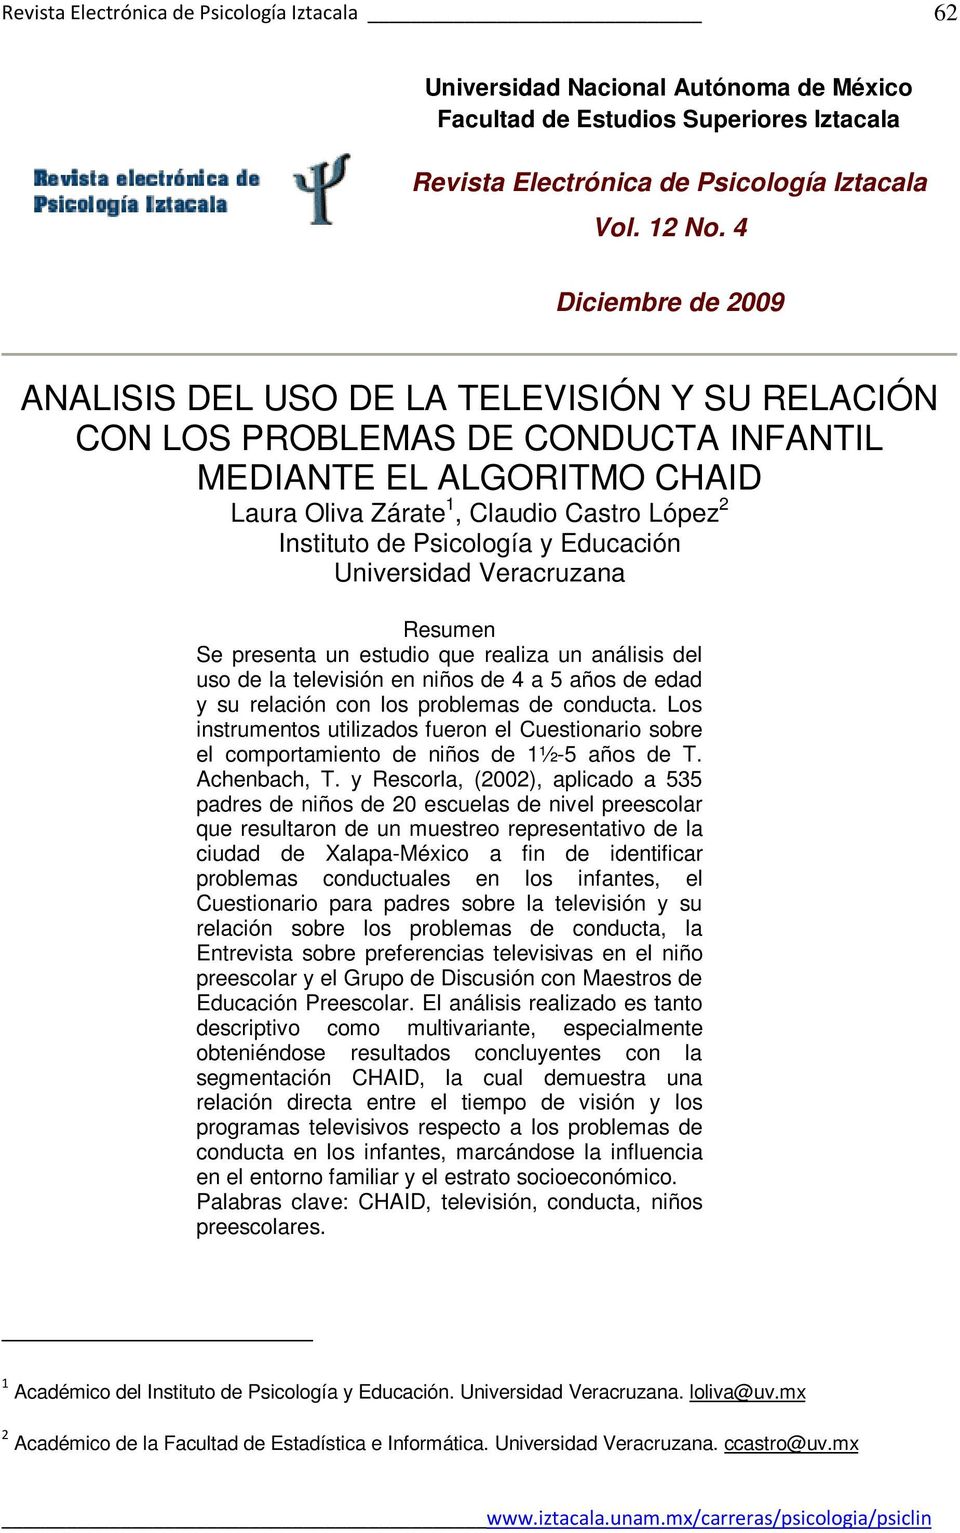 Psicología y Educación Universidad Veracruzana Resumen Se presenta un estudio que realiza un análisis del uso de la televisión en niños de 4 a 5 años de edad y su relación con los problemas de